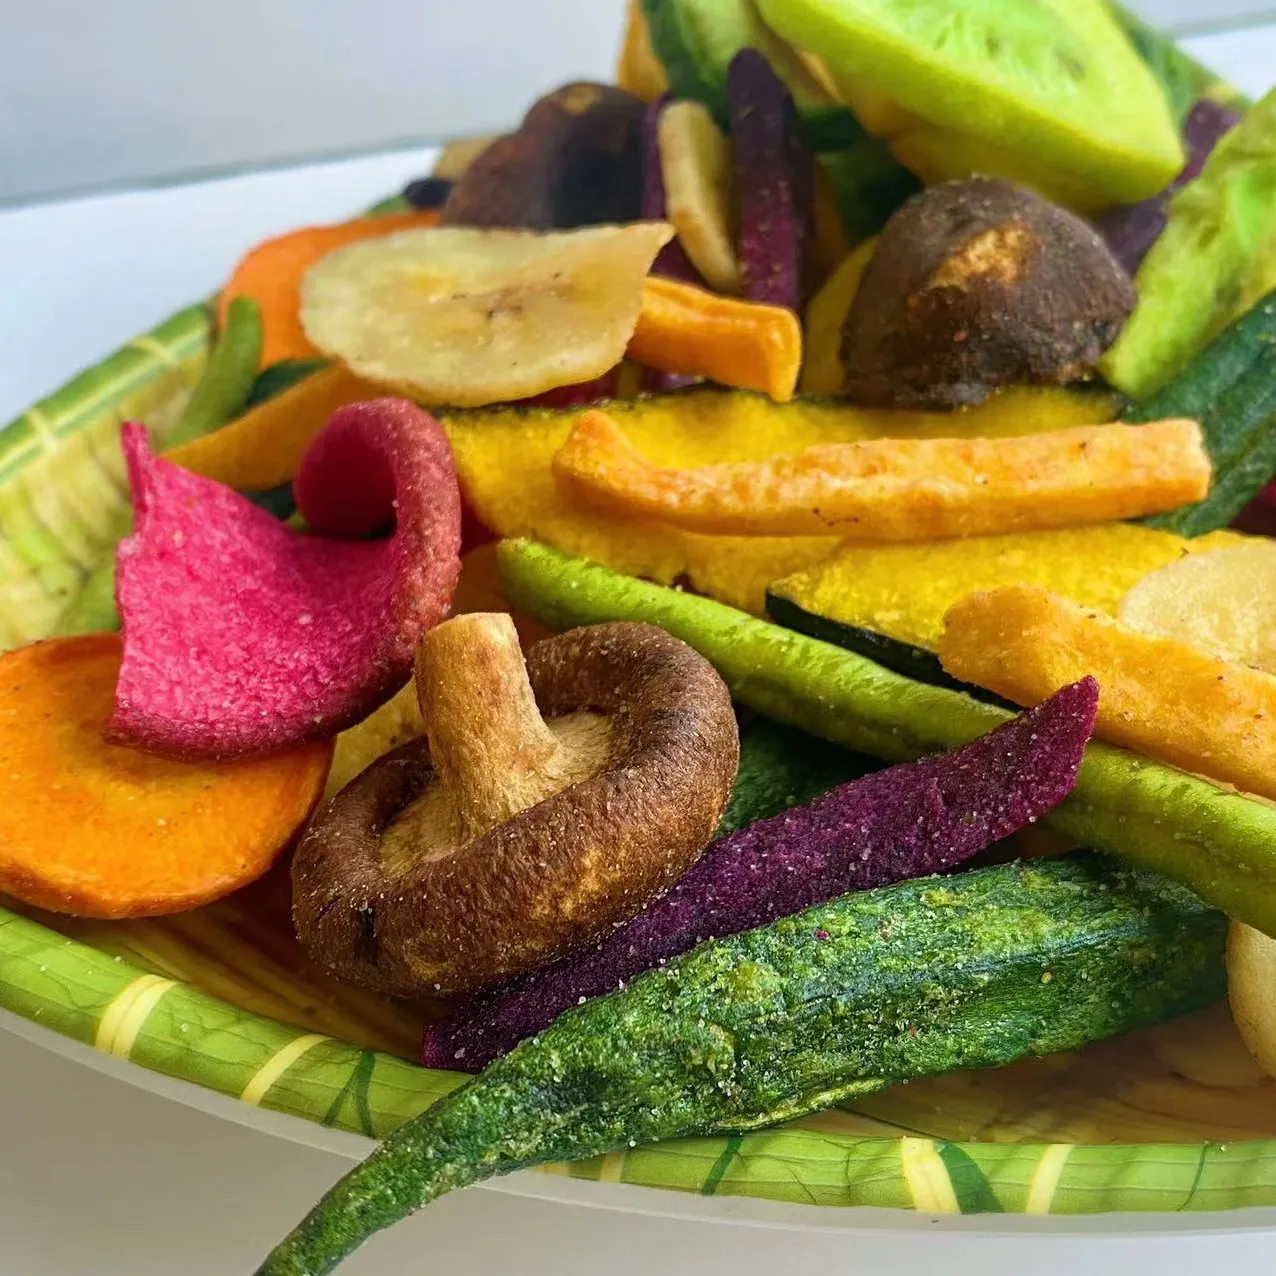 Doxvf — collations mixtes à fruits et légumes, cuits sous vide, une variété de collations saine